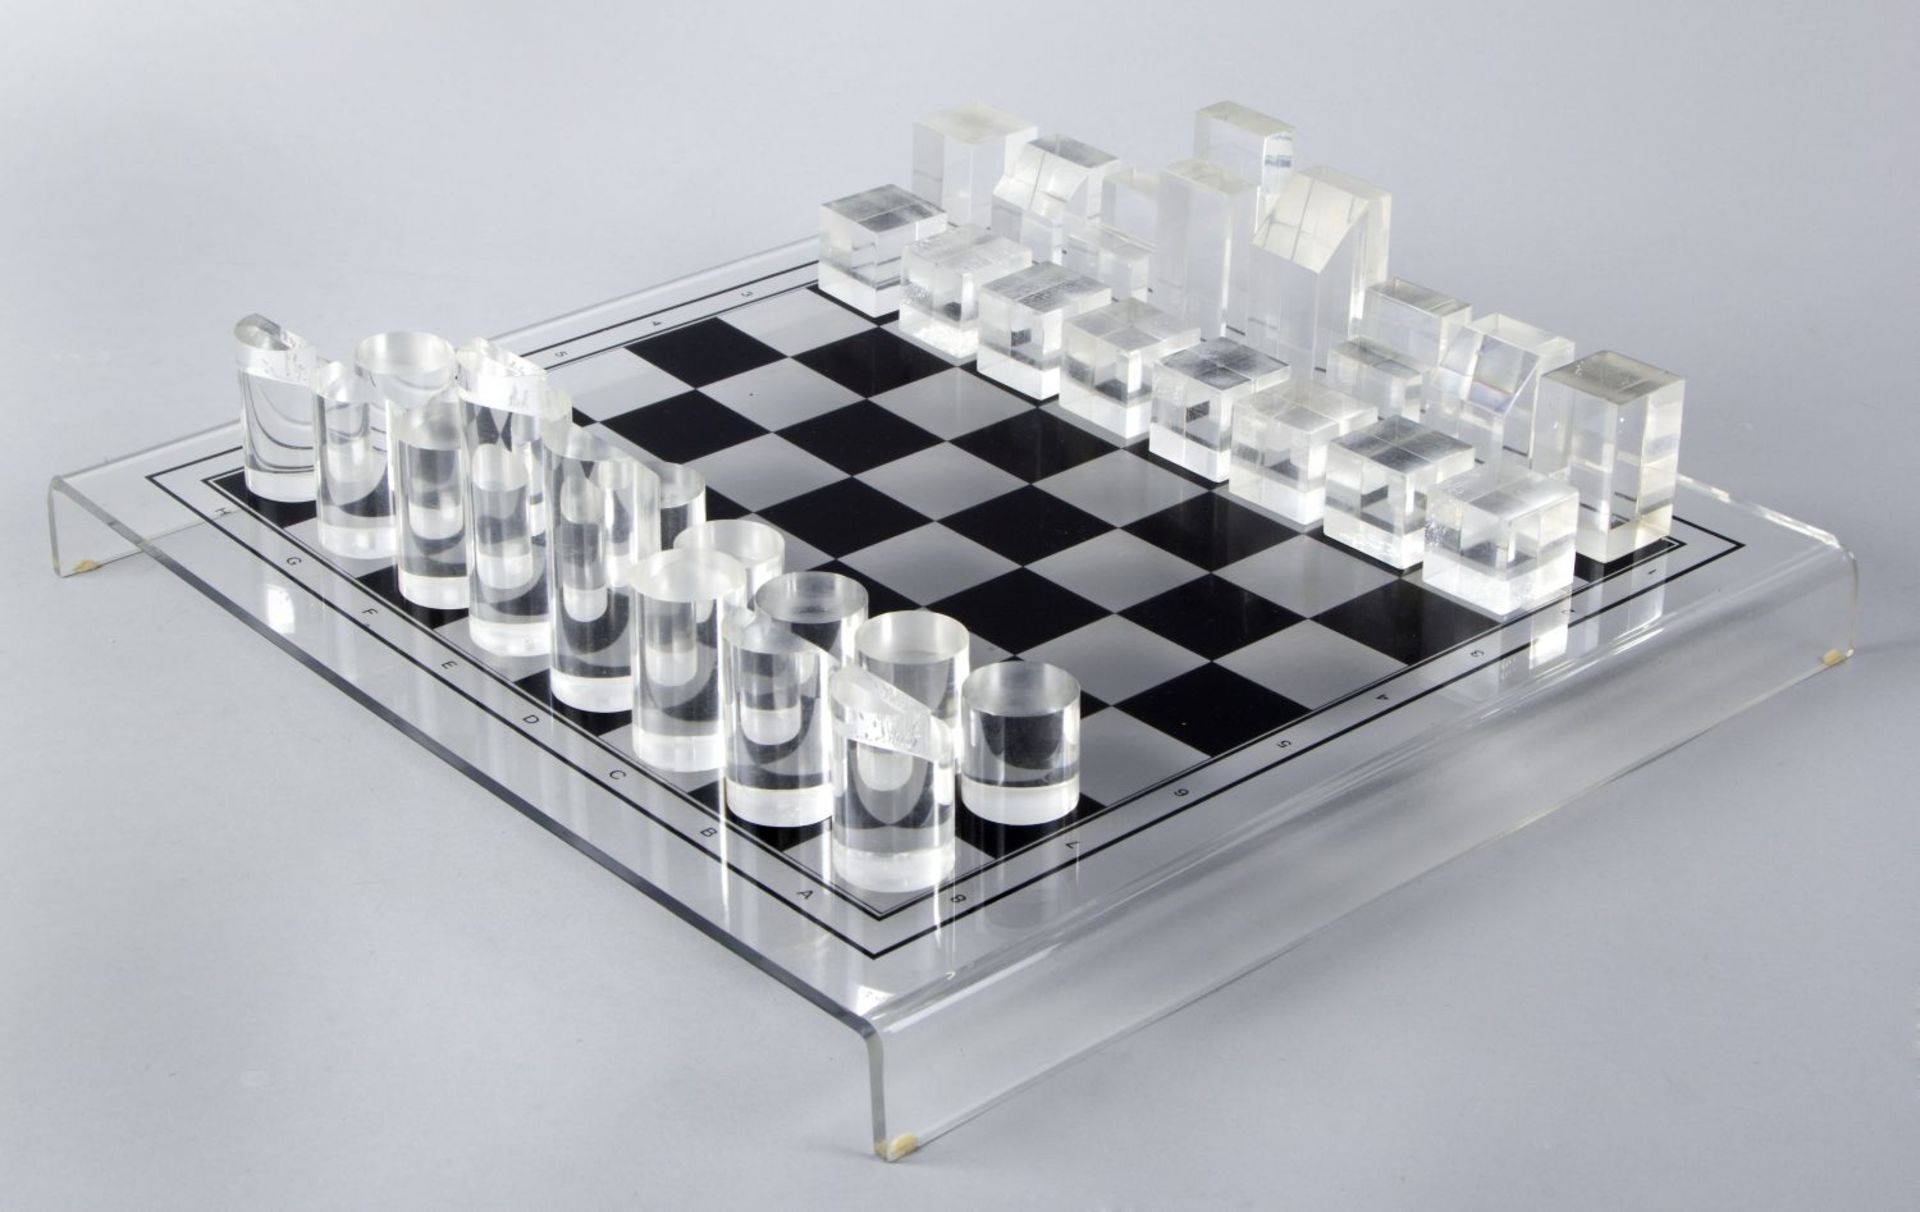 Modernes SchachspielPlexiglas. Spielsteine in Zylinder- bzw. Würfelformen. 37,8 x 38,3 cm.